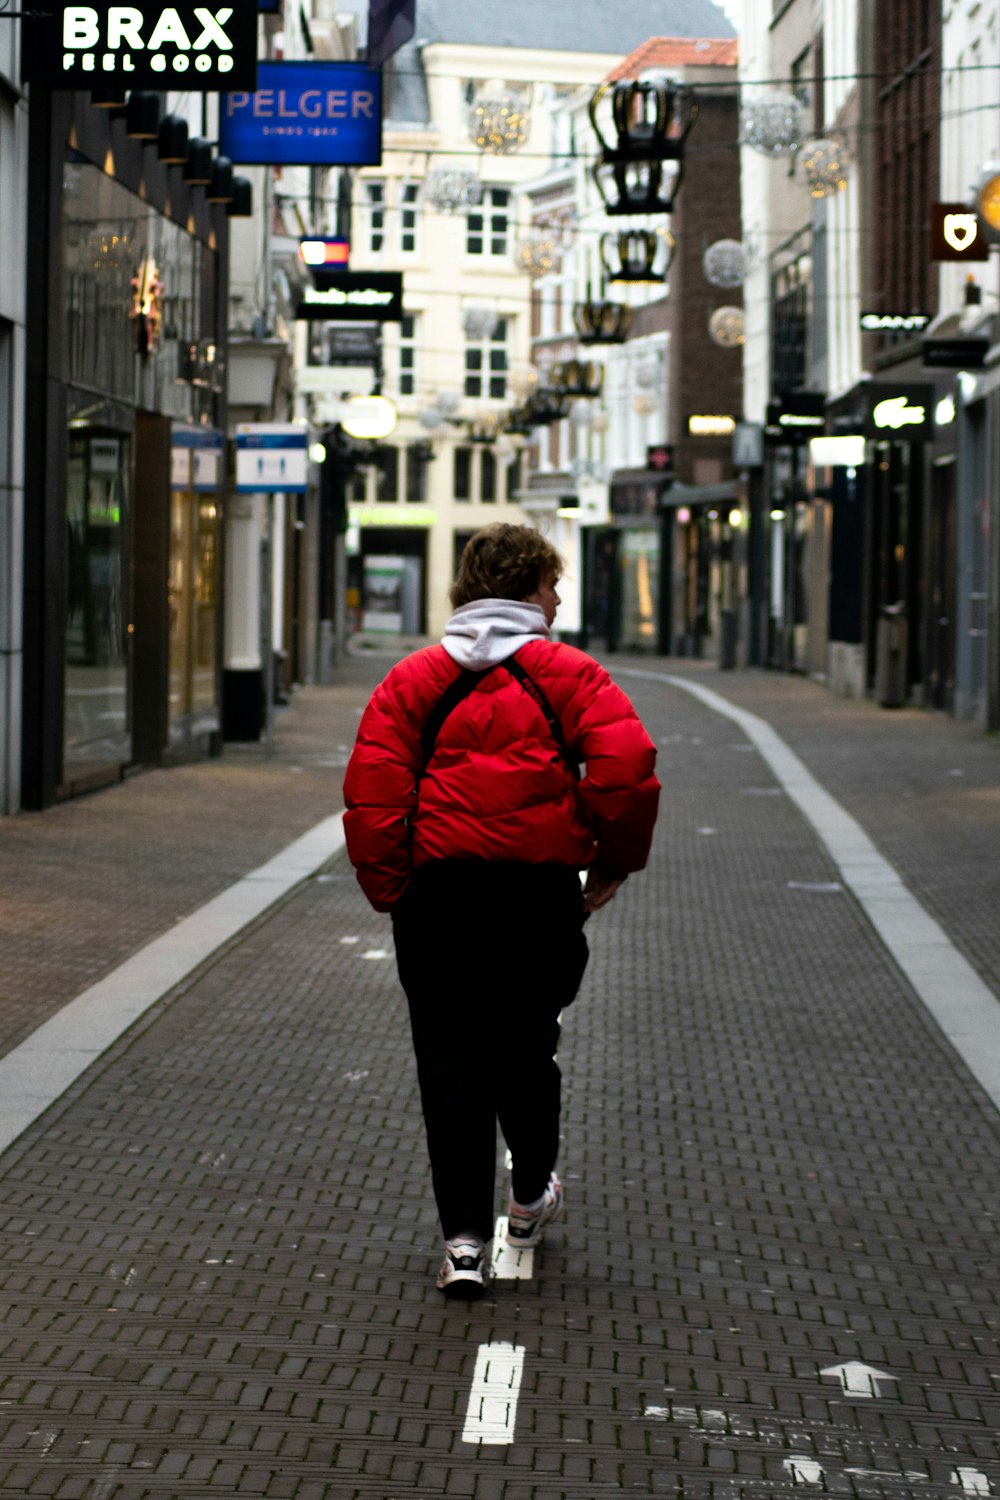 man in red jacket walking on sidewalk during daytime